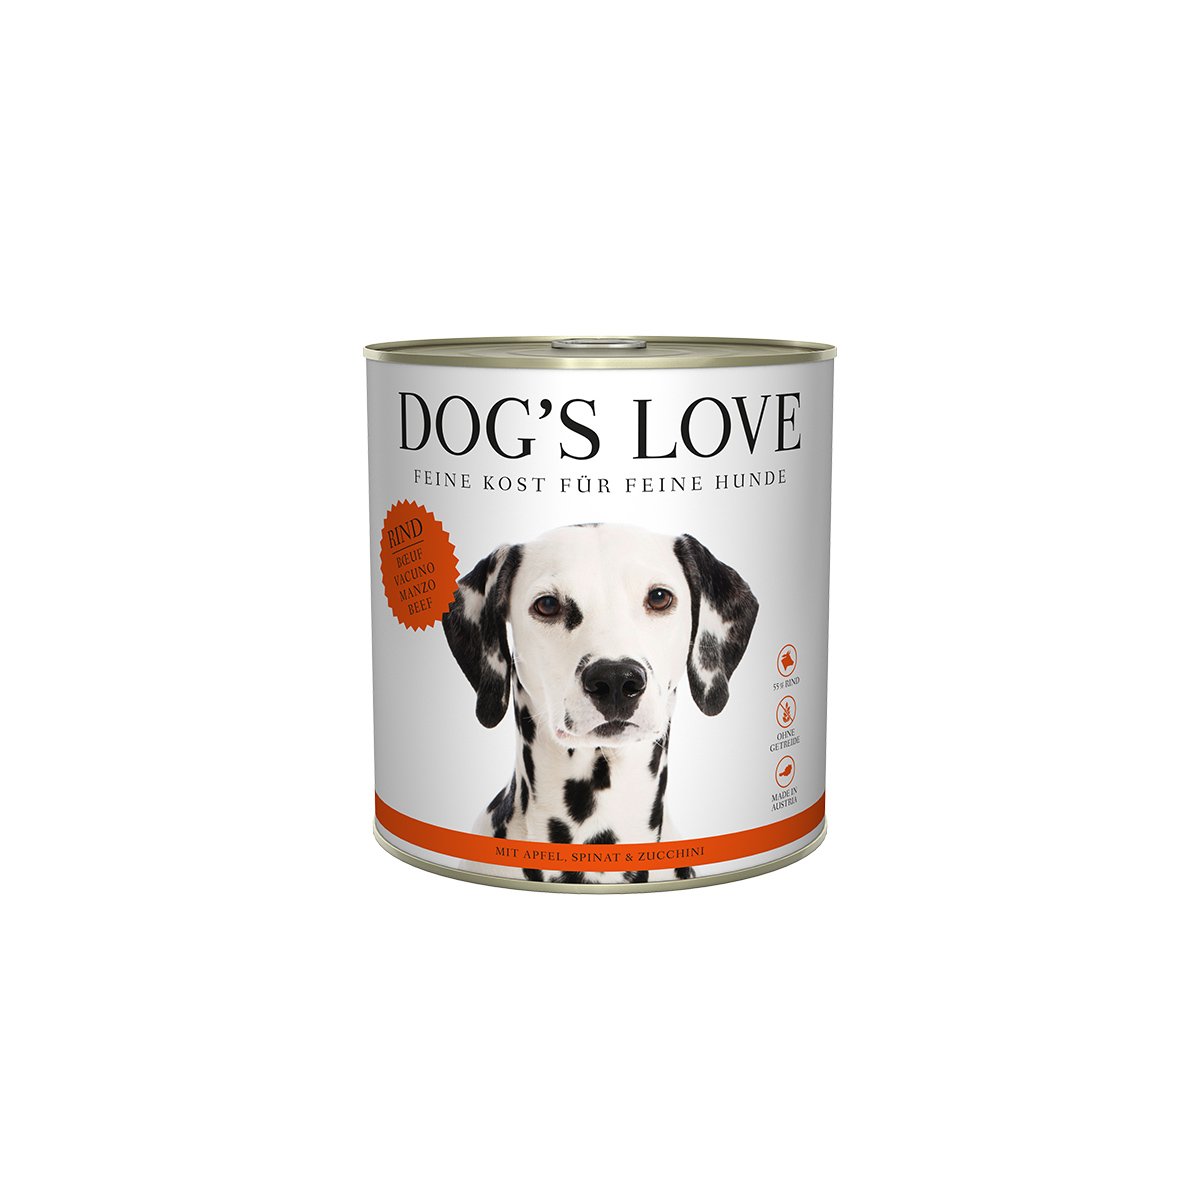 Dog's Love Classic Rind mit Apfel, Spinat und Zucchini 6x800g von Dog's Love